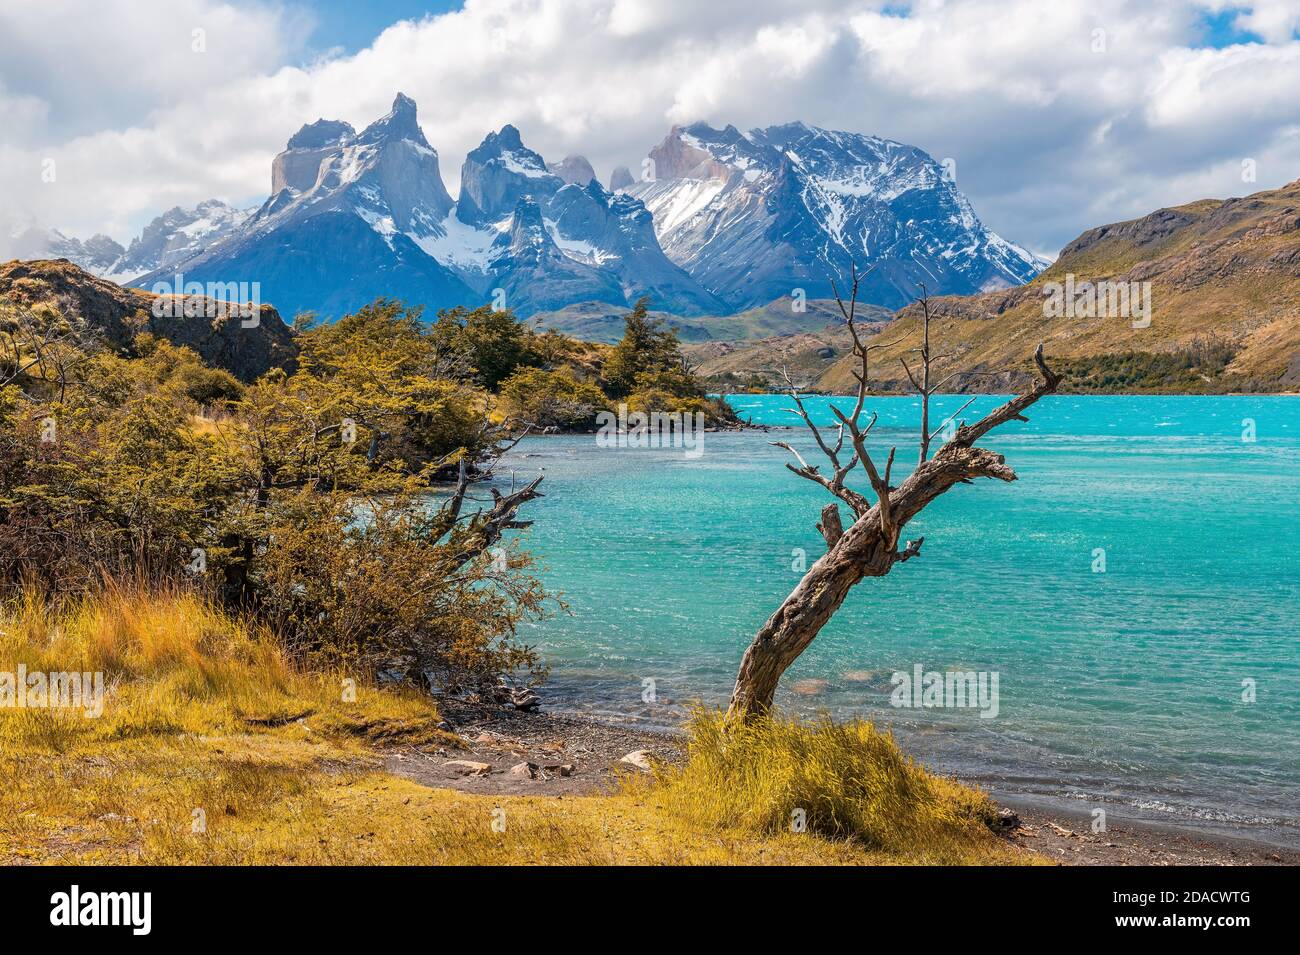 Arbre crocheté en raison du vent et du temps par le lac Pehoe avec les pics de Cuernos del Paine, parc national de Torres del Paine, Patagonie, Chili. Banque D'Images